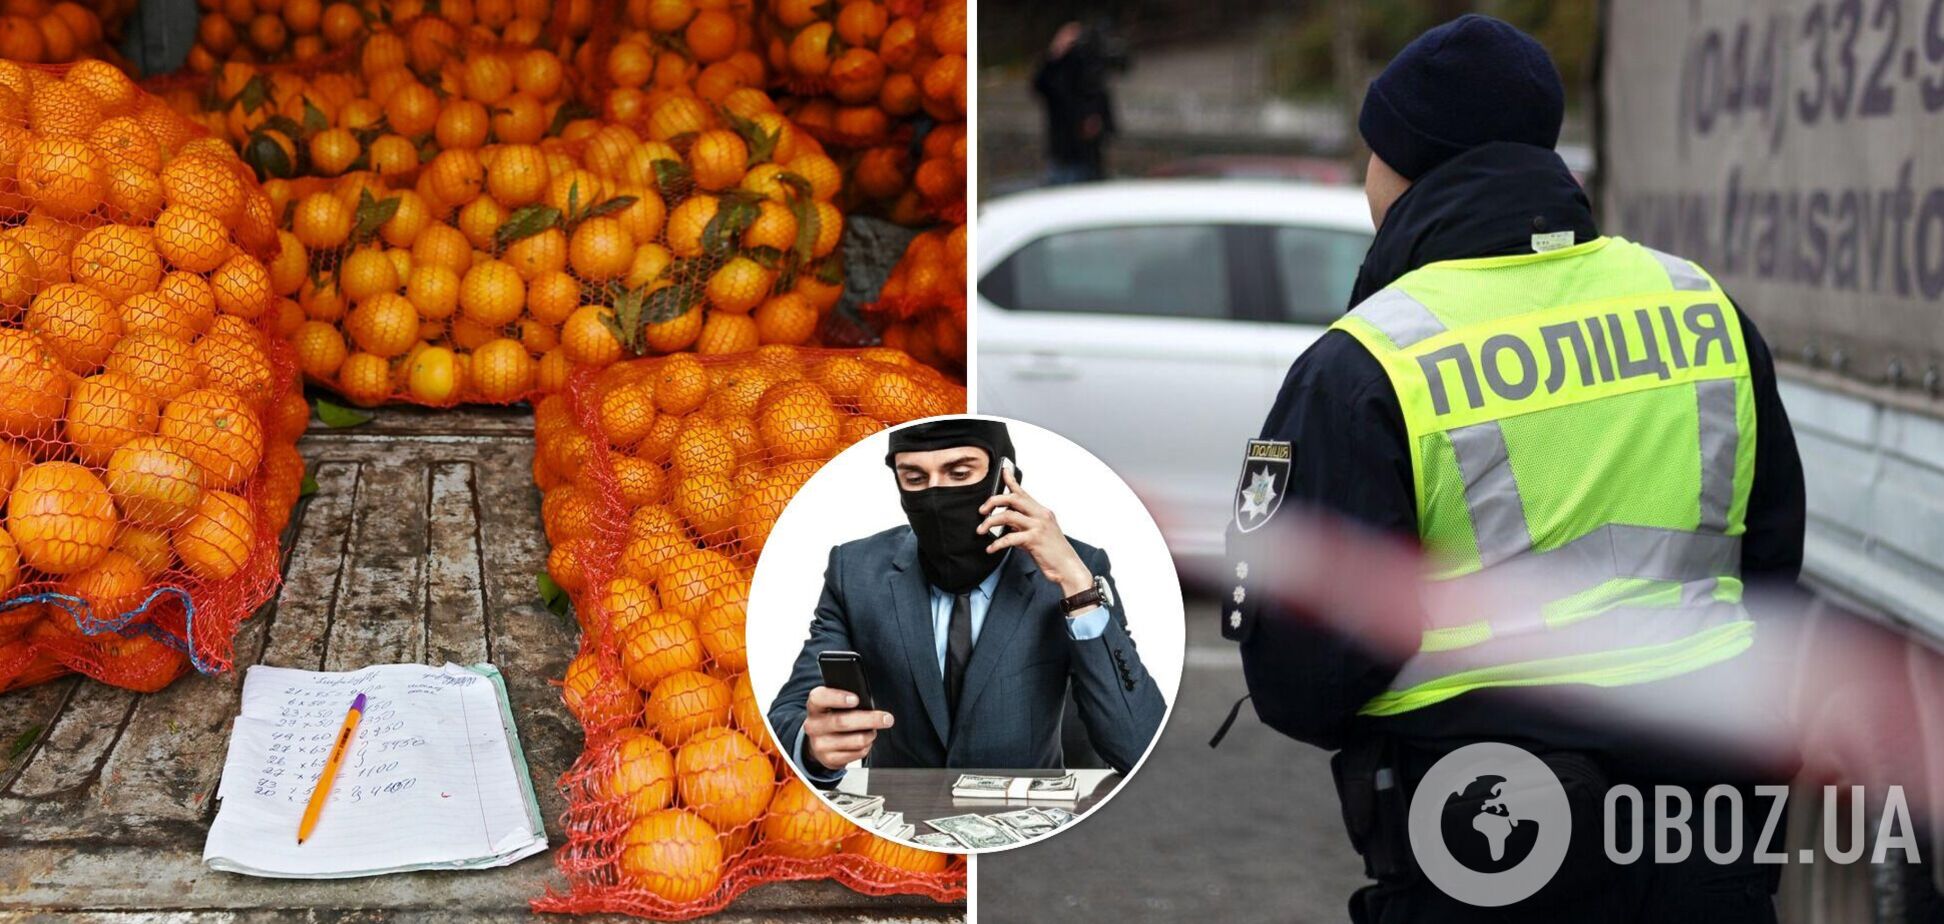 На Херсонщине украли грузовик с мандаринами и апельсинами на 10 тыс. грн: детали ЧП